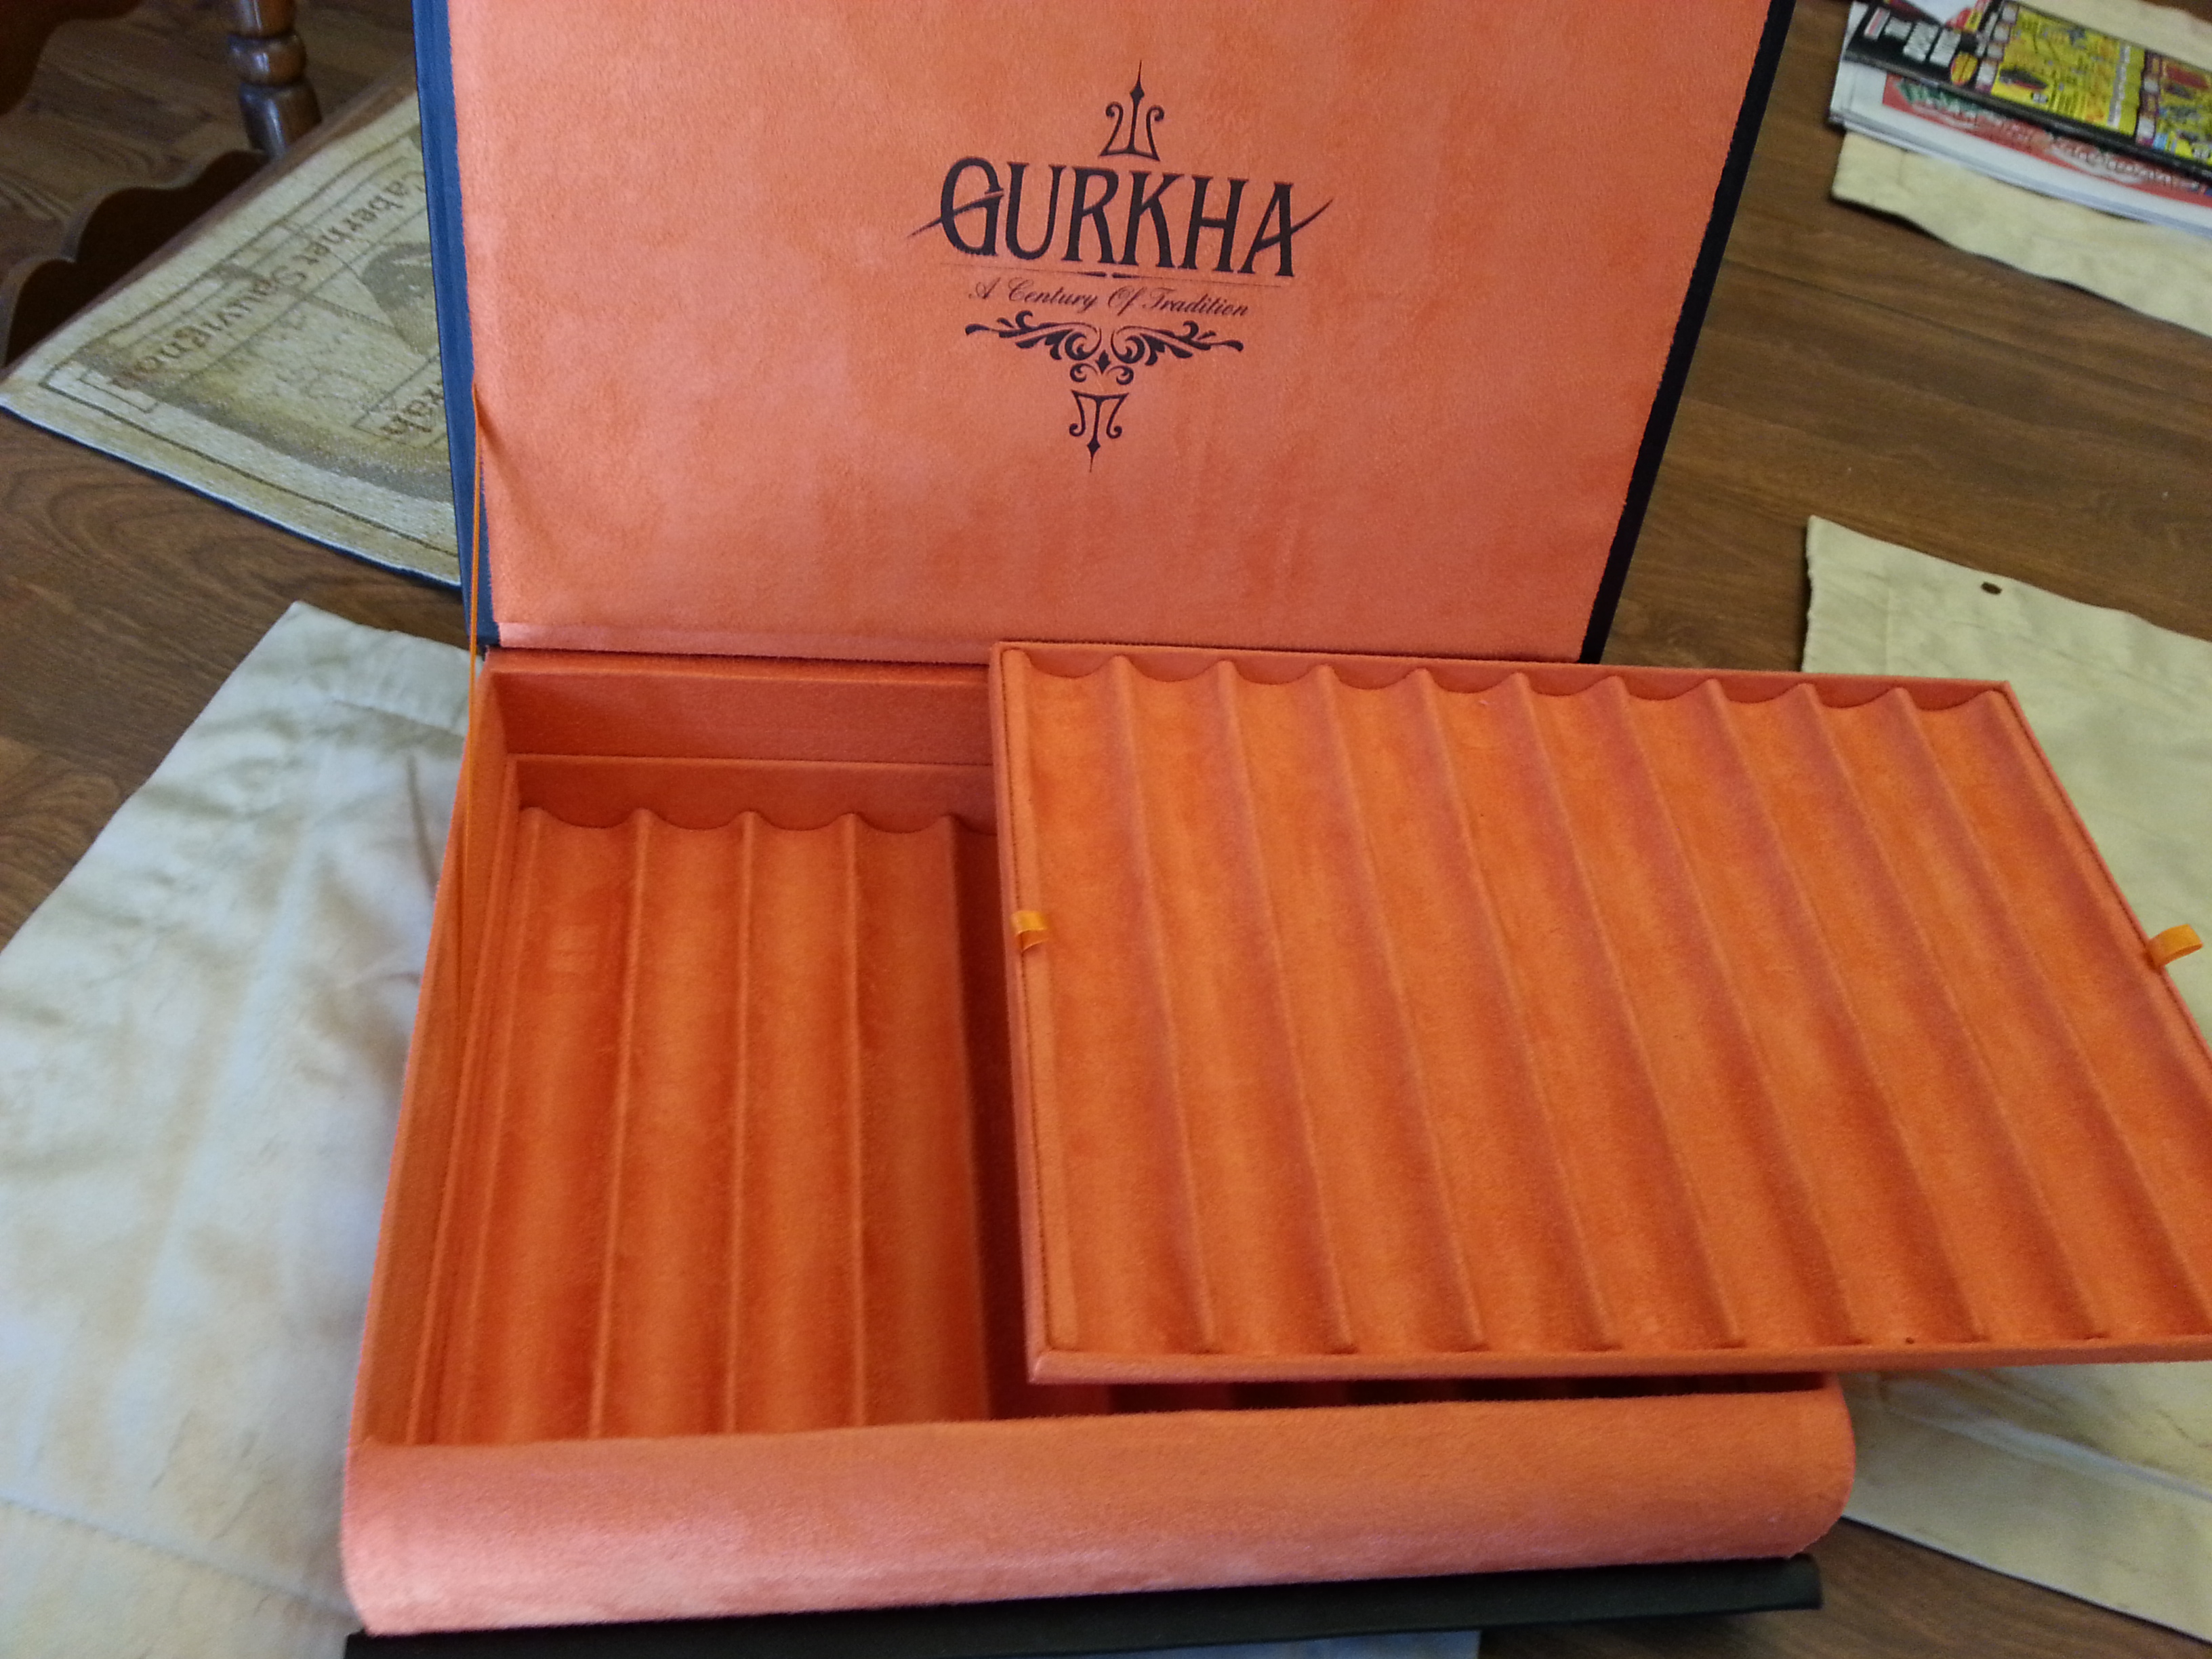 Gurka cigar box